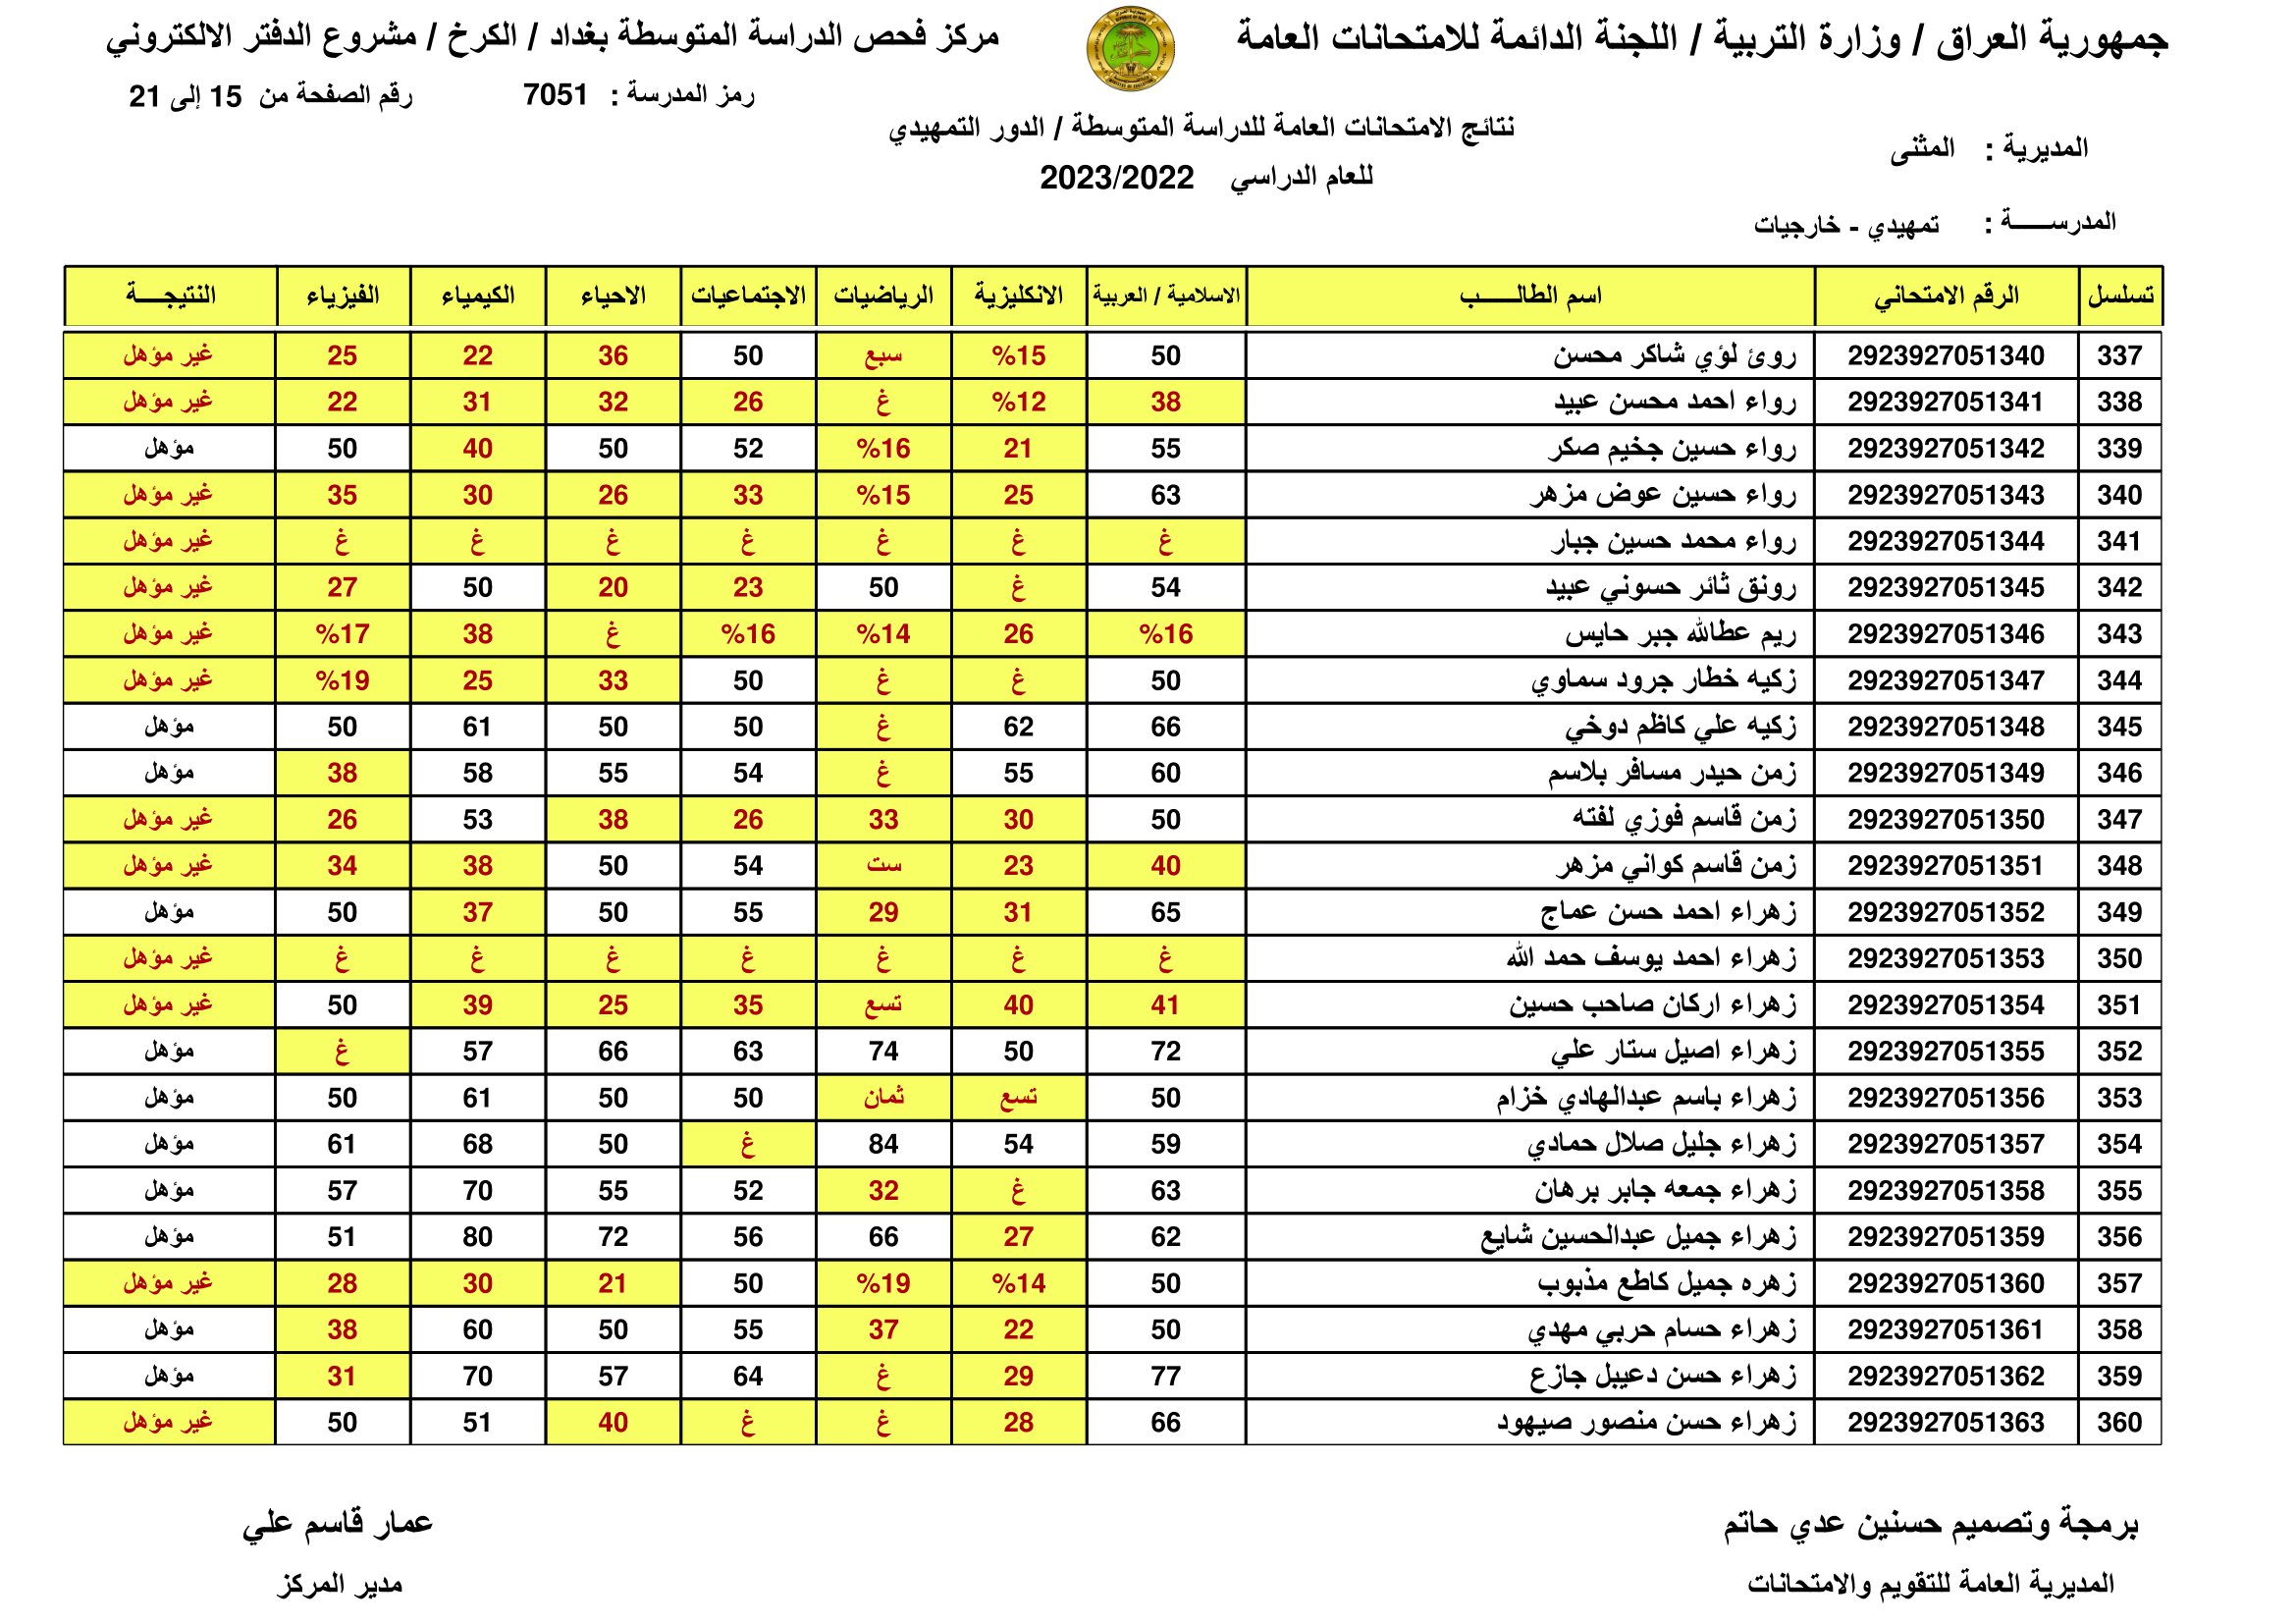 الان صدرت:: نتائج السادس الابتدائي الرصافة الثالثة 2023 نتائج سادسة ابتدائي رصافه 3 عبر موقع وزارة التربية العراقية 2